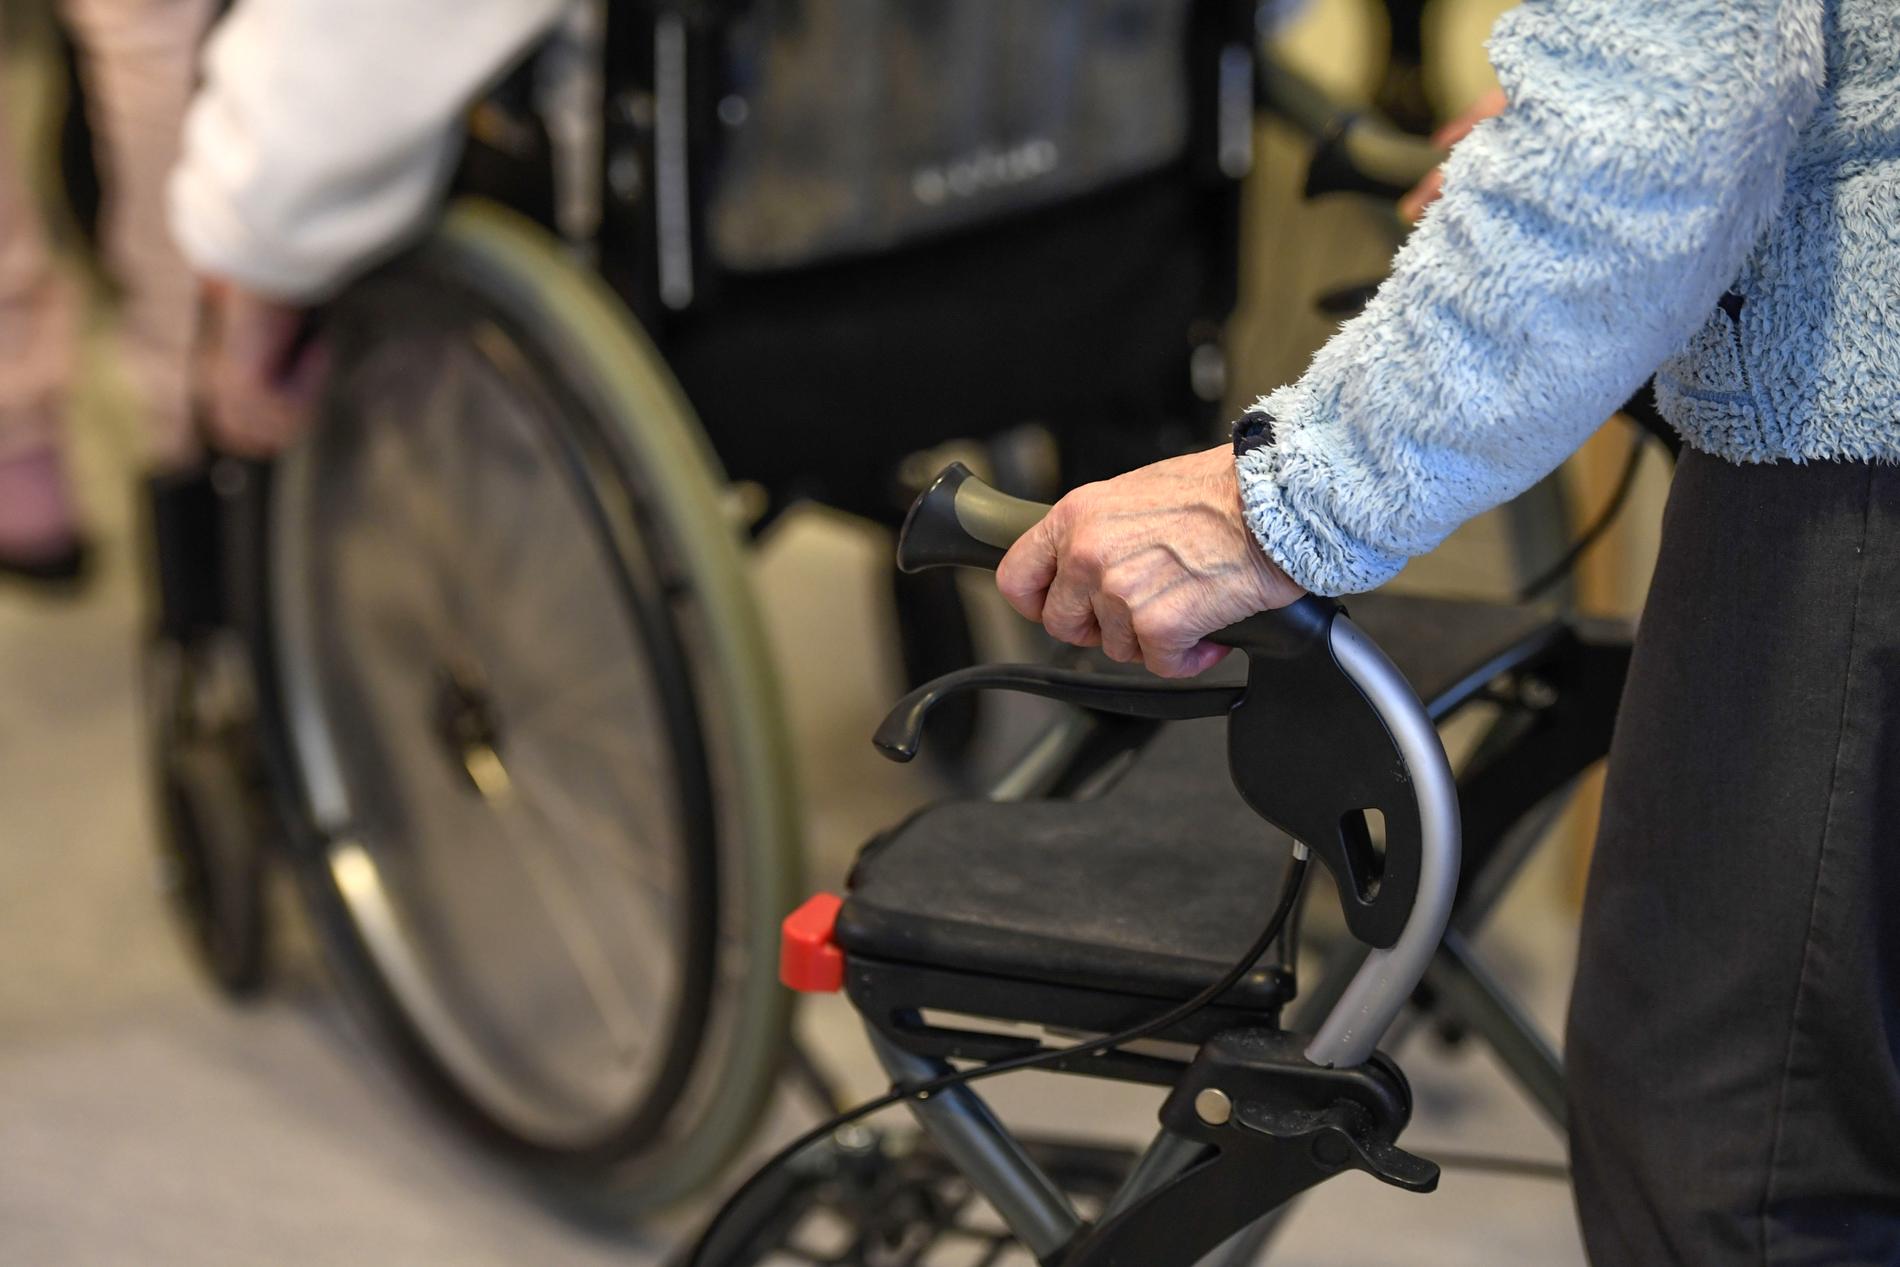 En 85-årig kvinna dog efter en rullstolsolycka på ett äldreboende. Nu har kommunen anmält händelsen. 